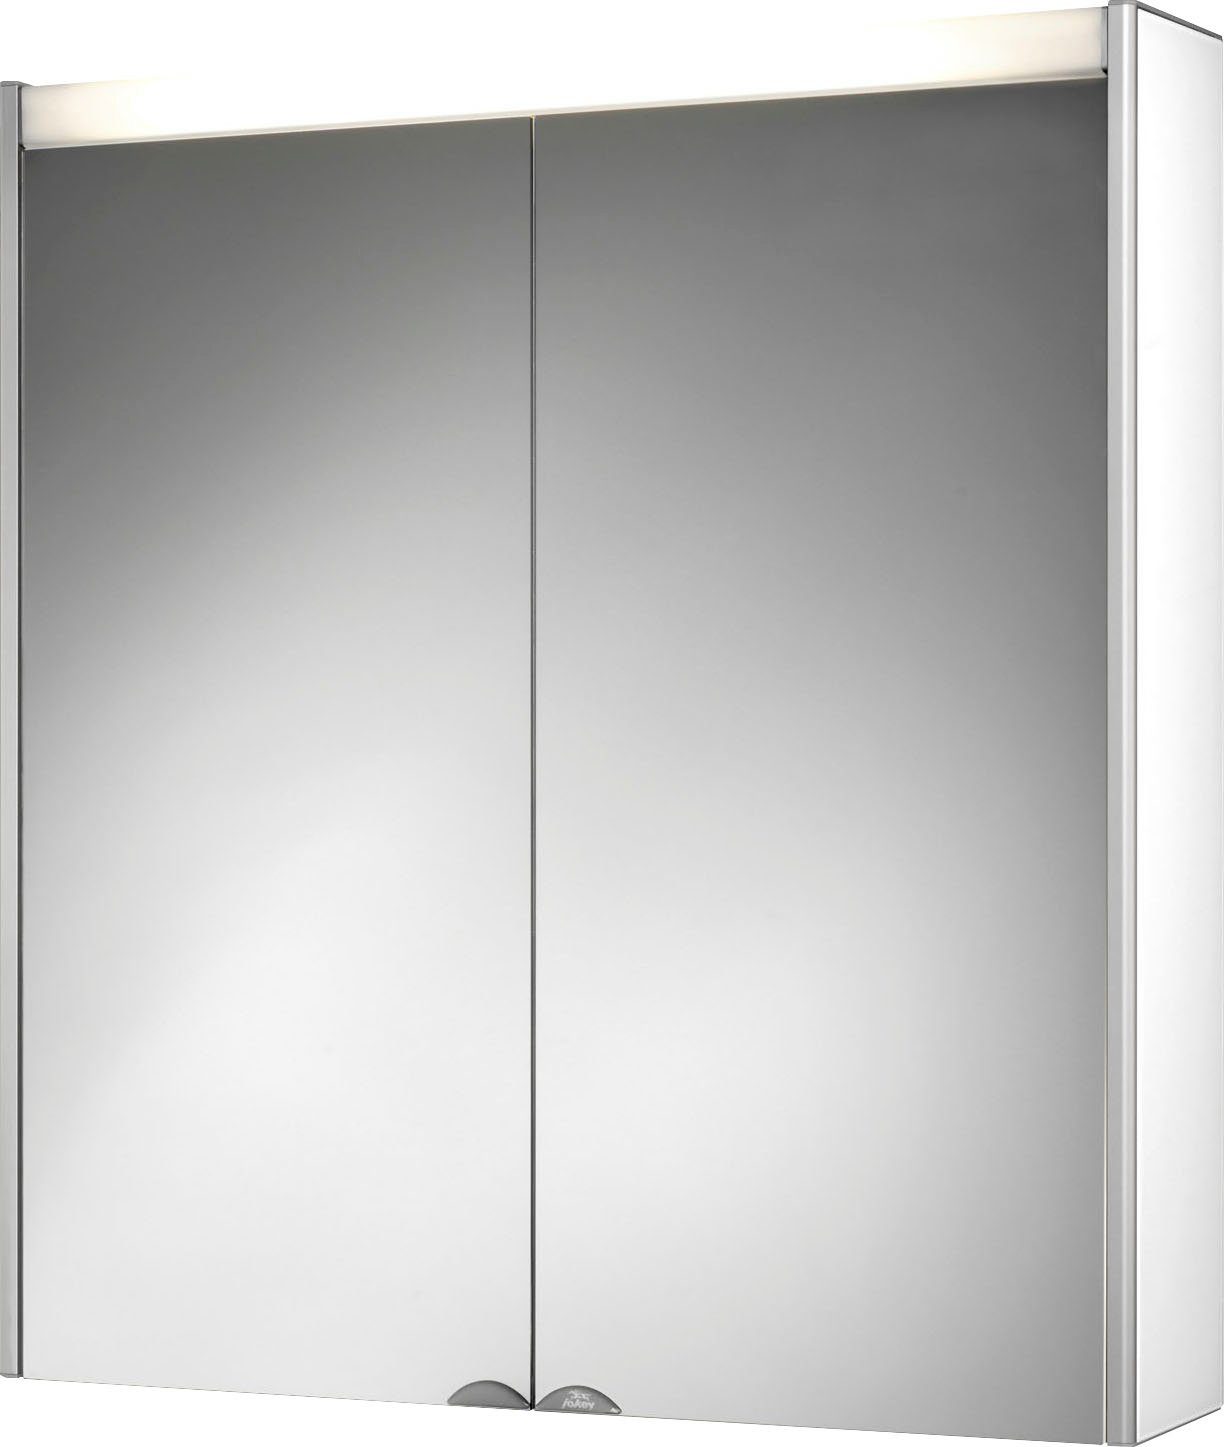 jokey Spiegelschrank Dekor Alu LED Aluminium, 65,4cm breit Weiß | Aluminium/Weiß | Spiegelschränke